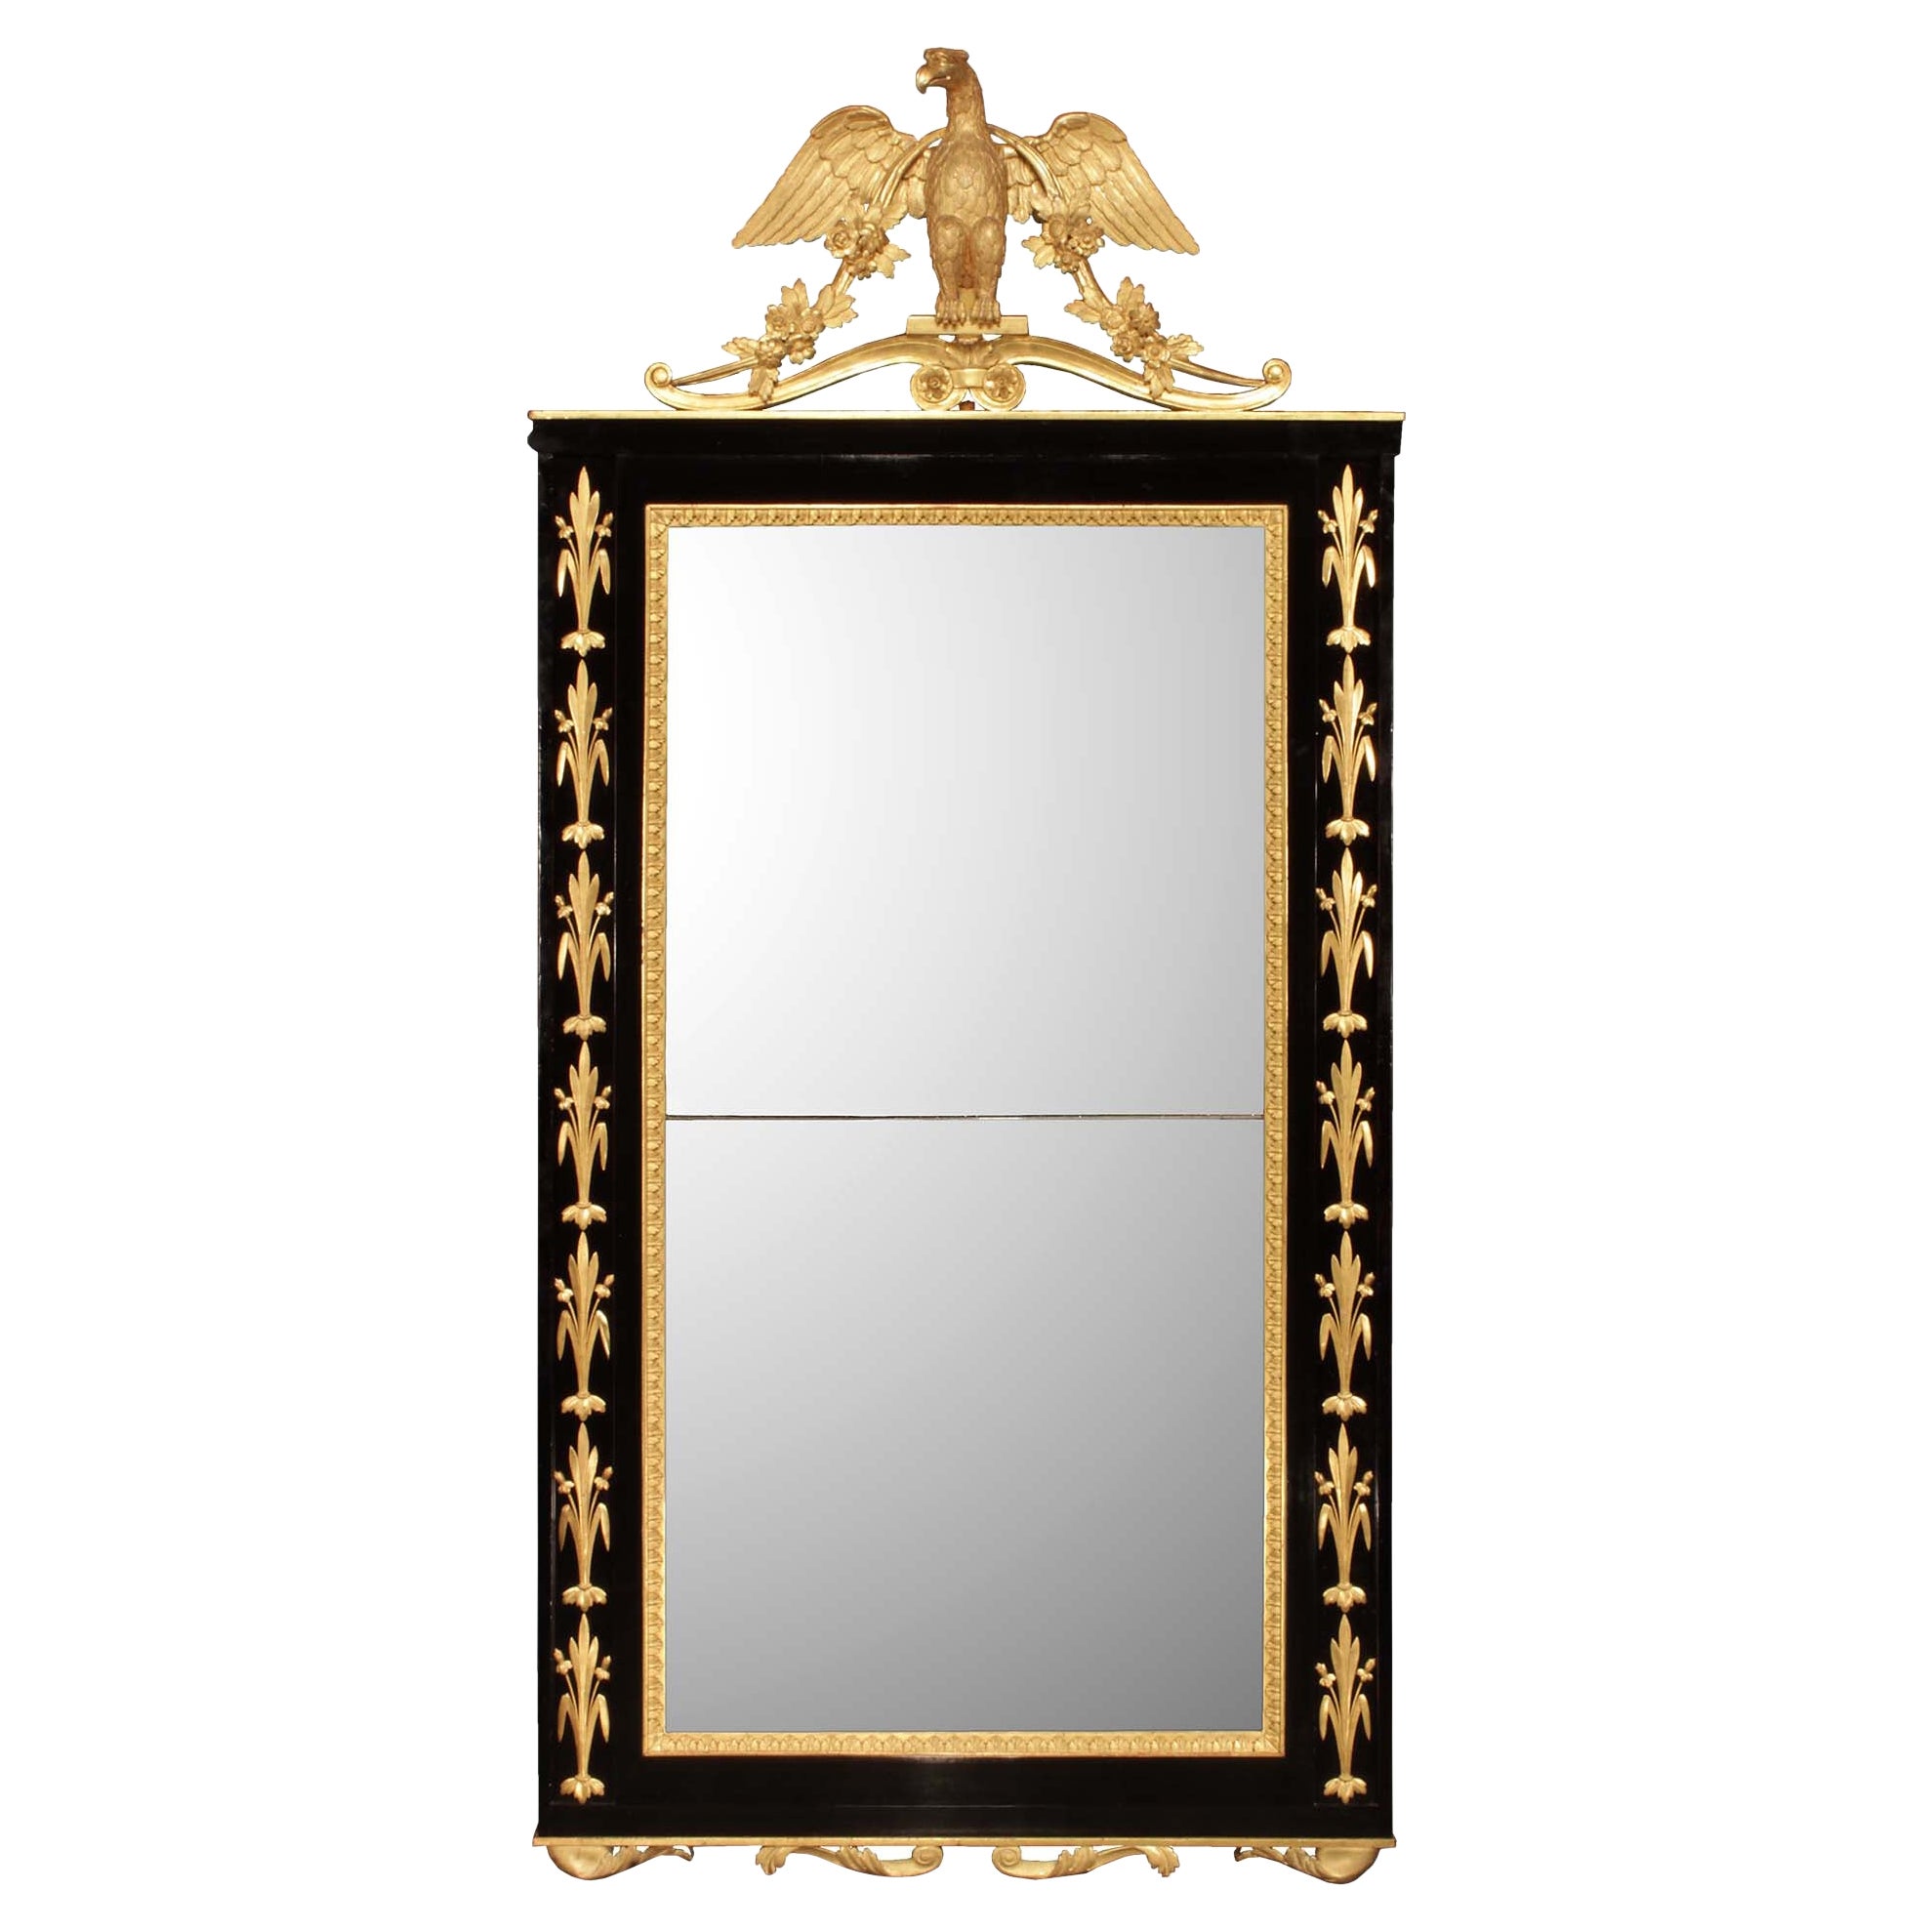 Miroir italien néo-classique du début du XIXe siècle en ébène et bois doré